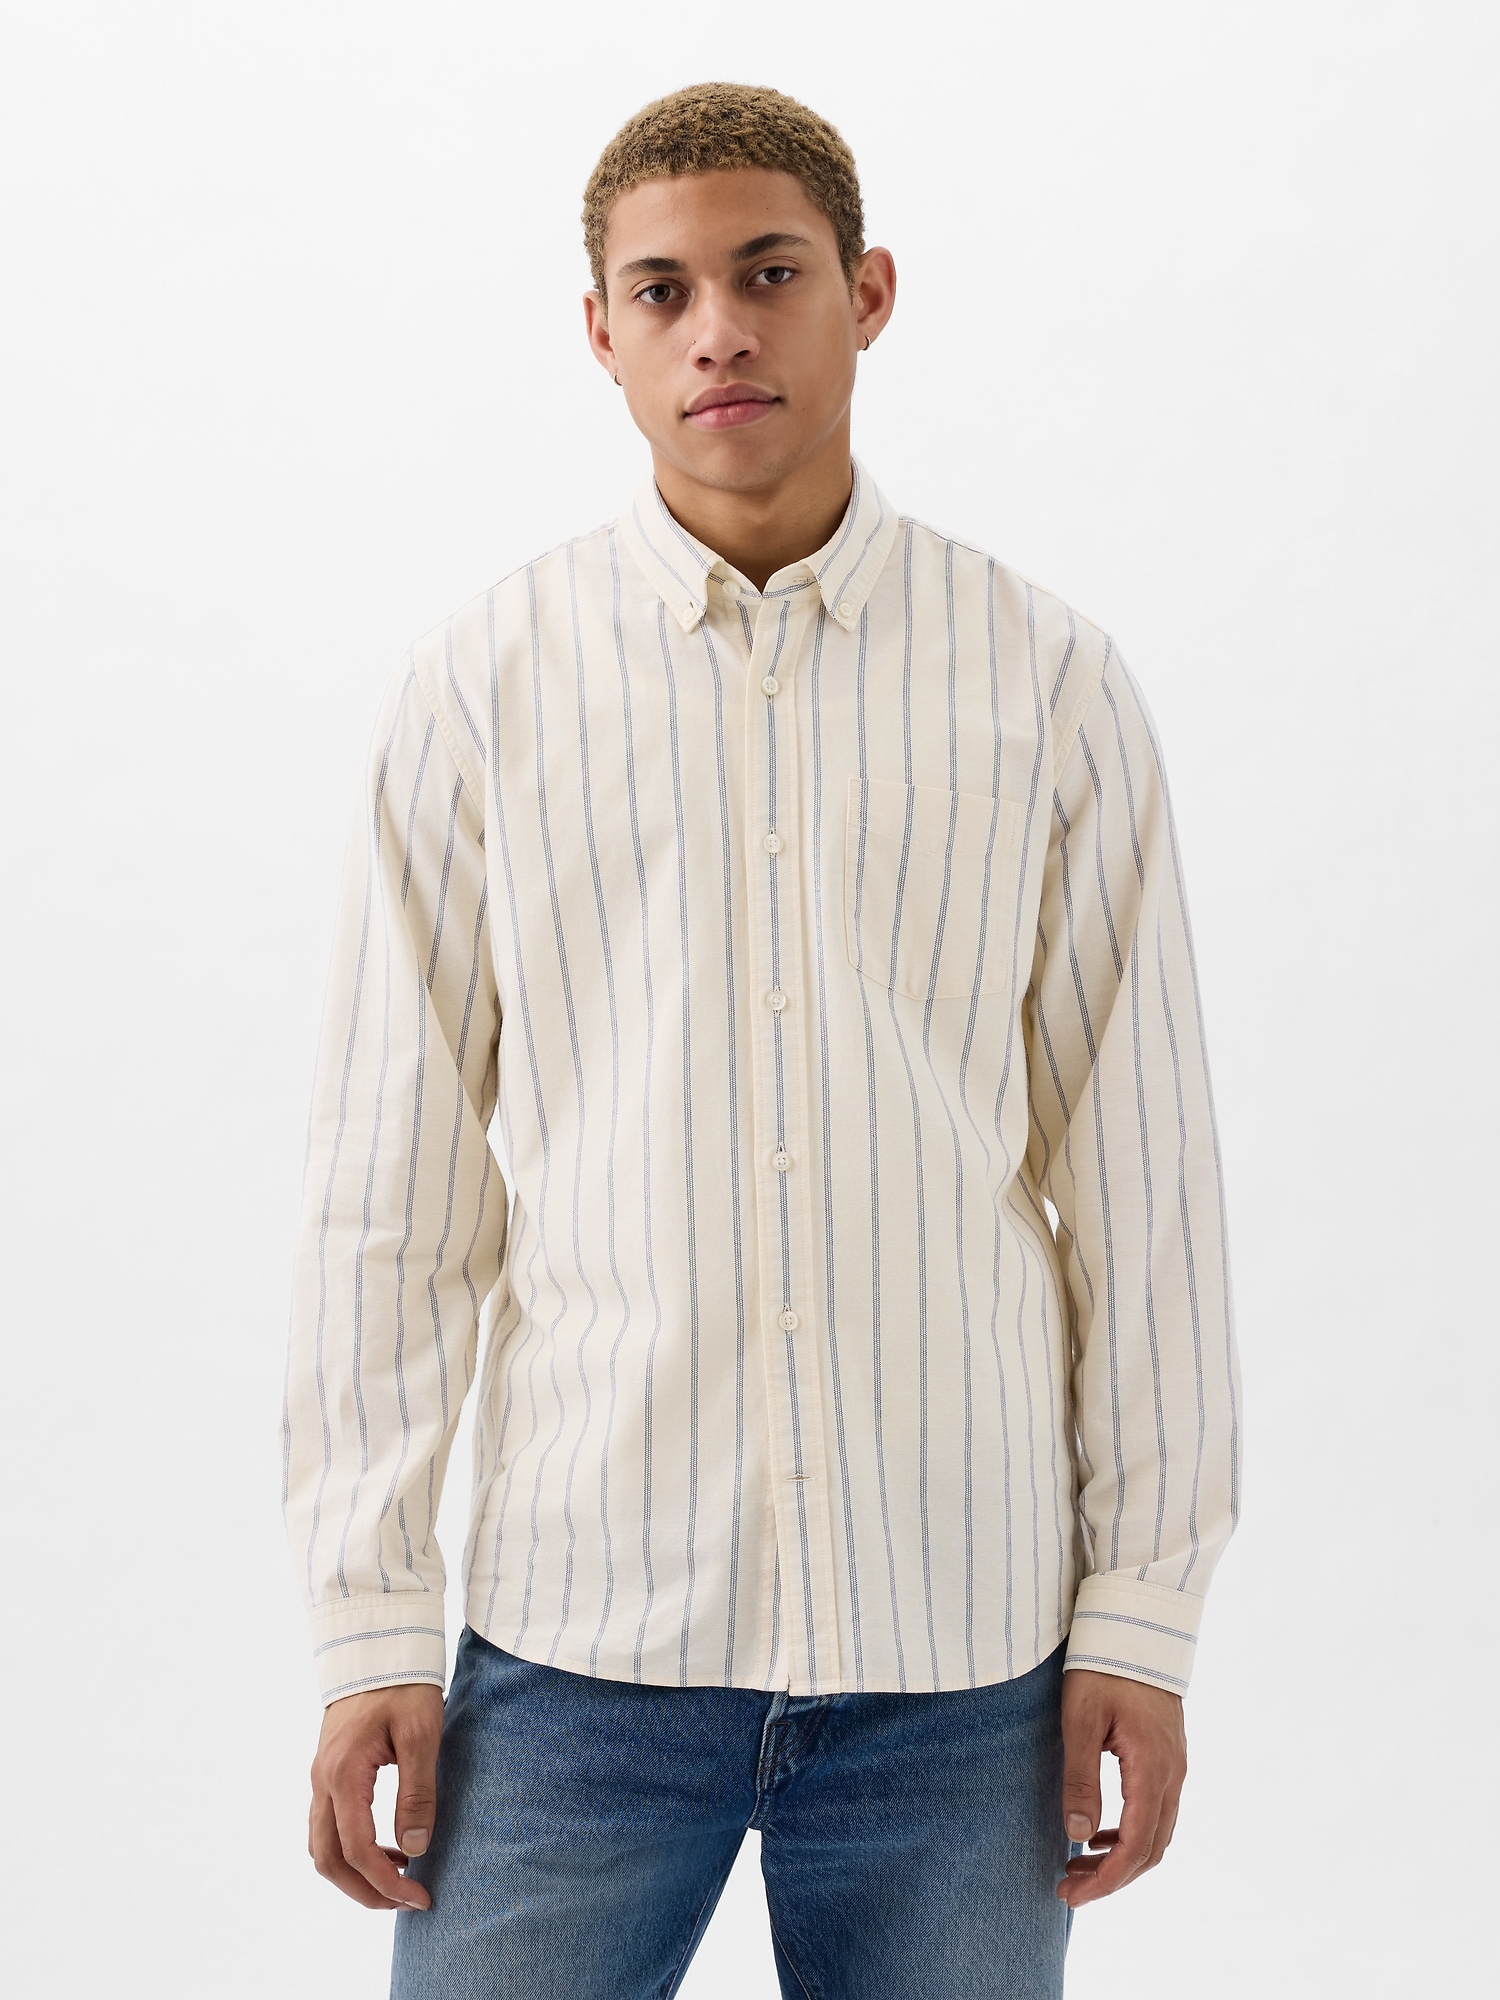 Gap Classic Oxford Shirt In Standard Fit In Beige Stripe